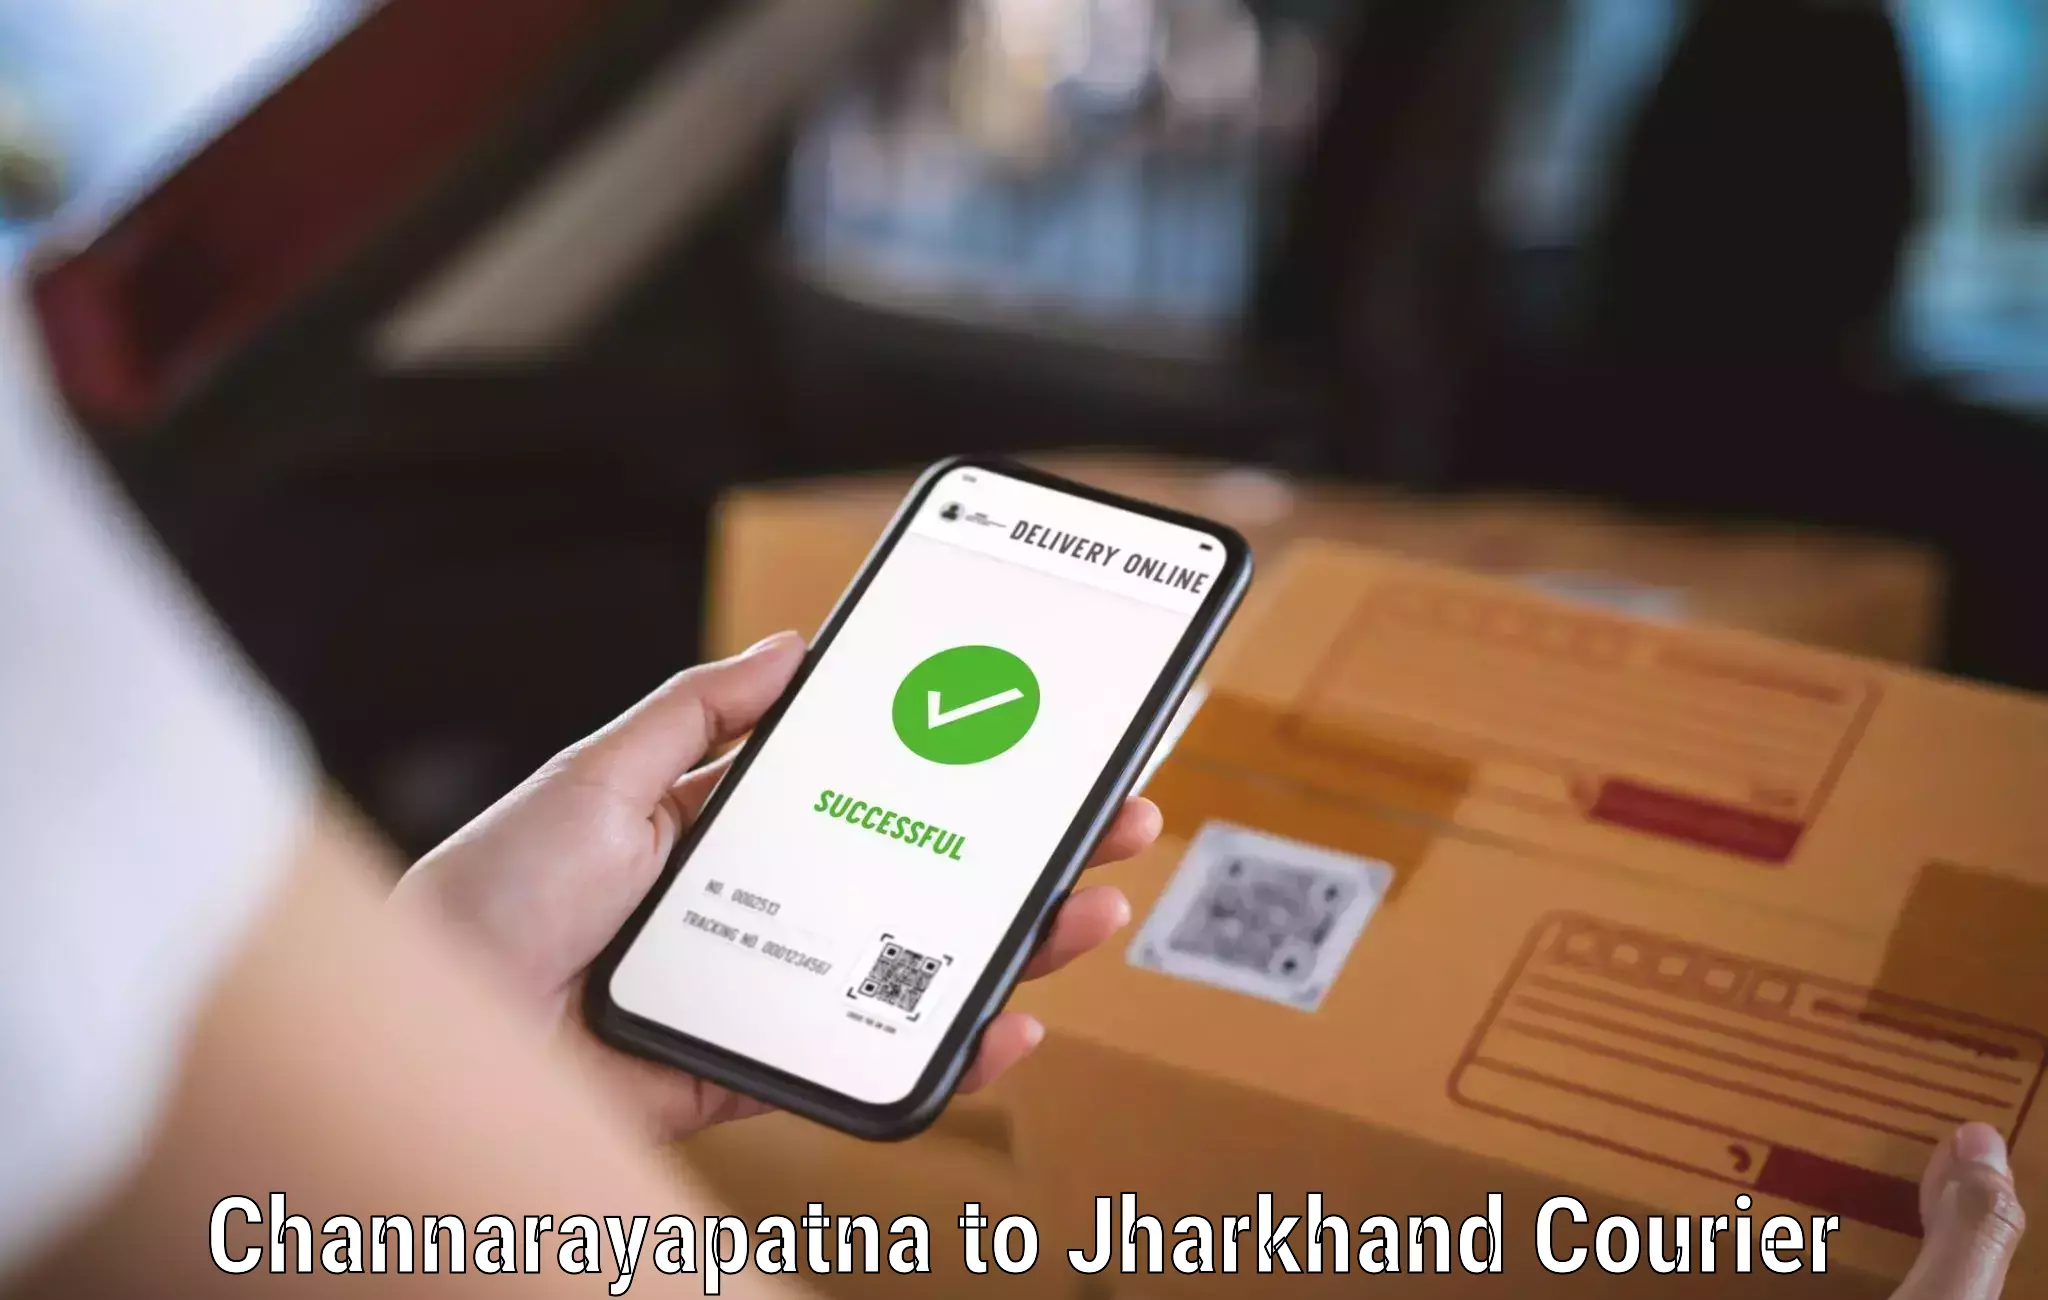 Bulk courier orders Channarayapatna to Dhanbad